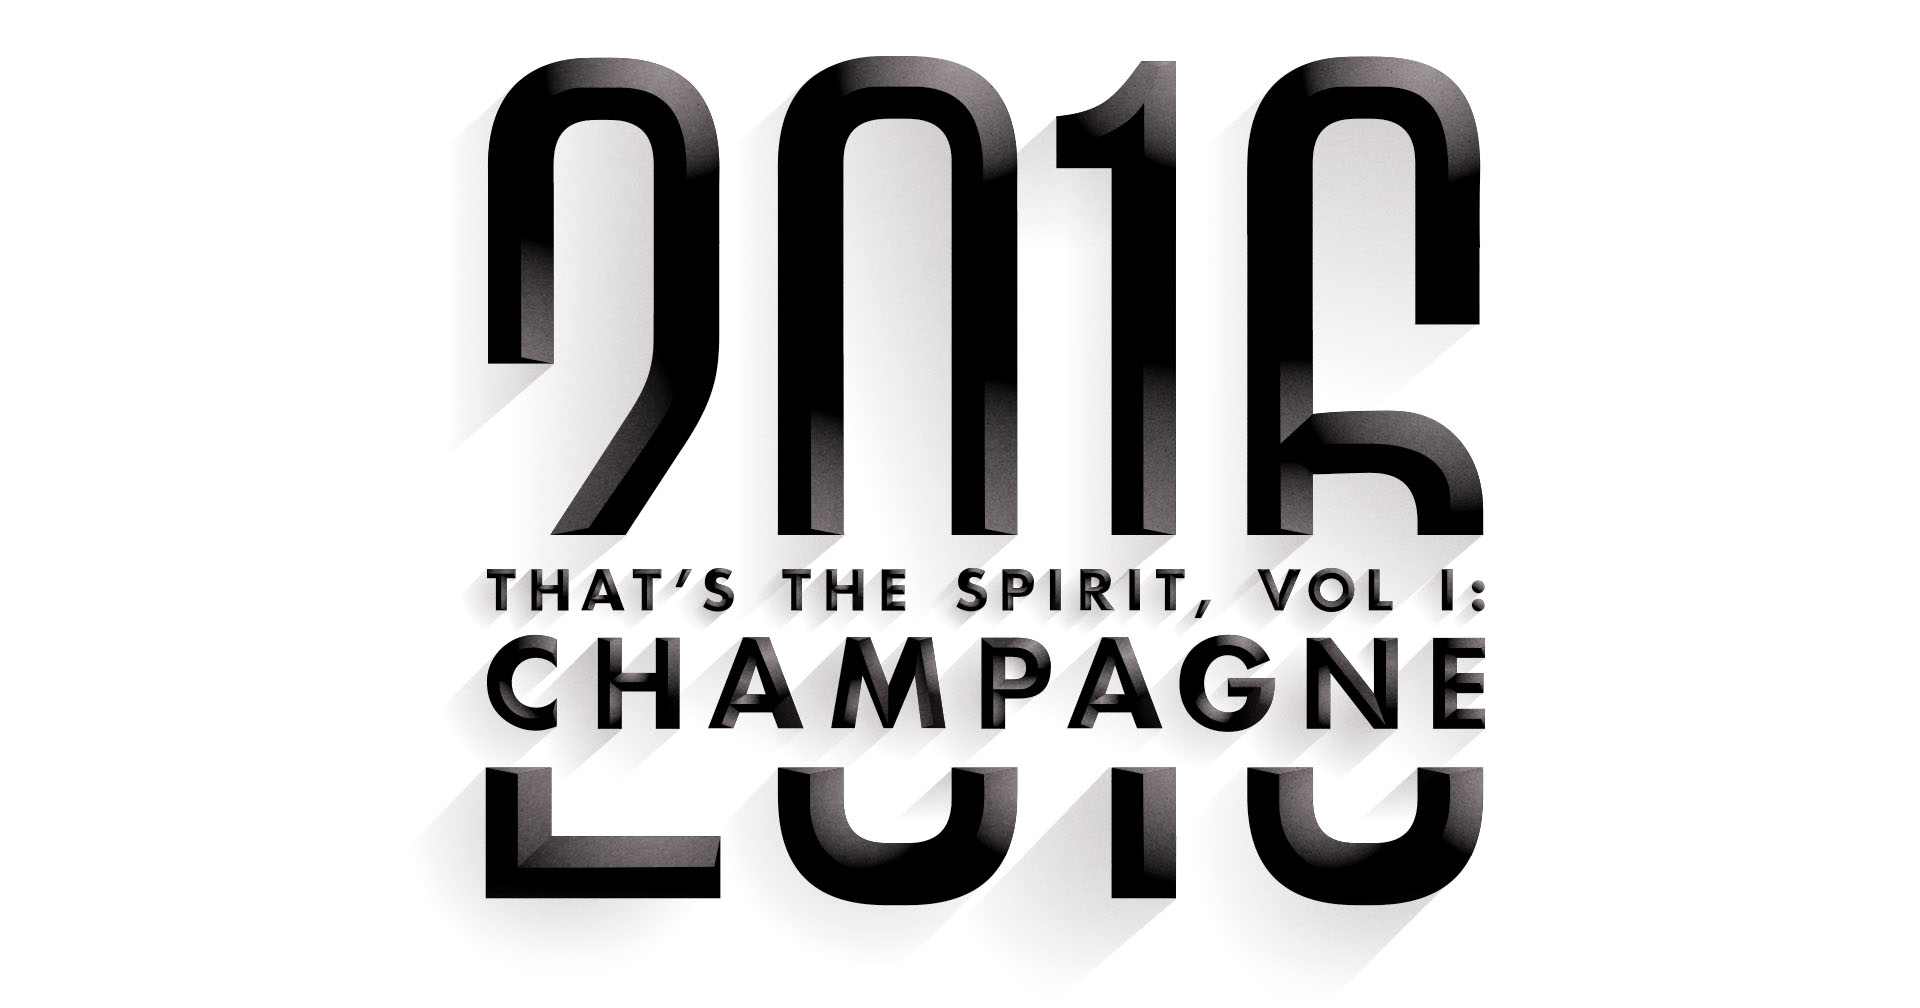 That’s the Spirit, Vol. I: Champagne